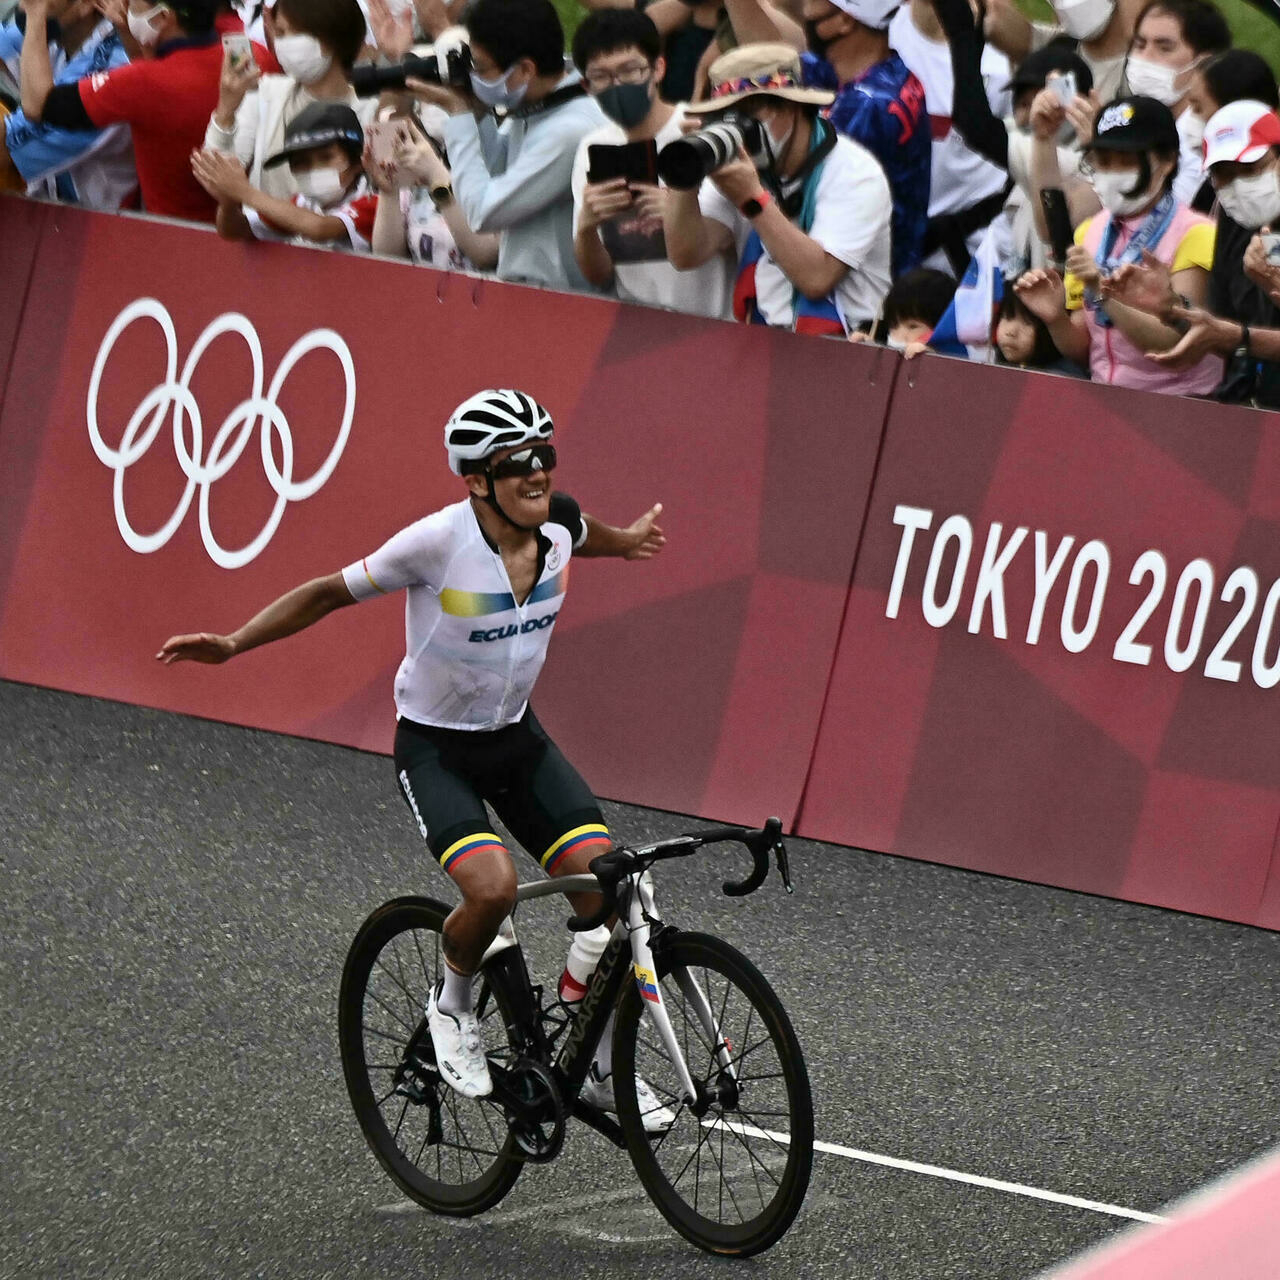 أولمبياد طوكيو (سباق الدراجات): الإكوادوري كاراباس يحرز ذهبية السباق على الطريق